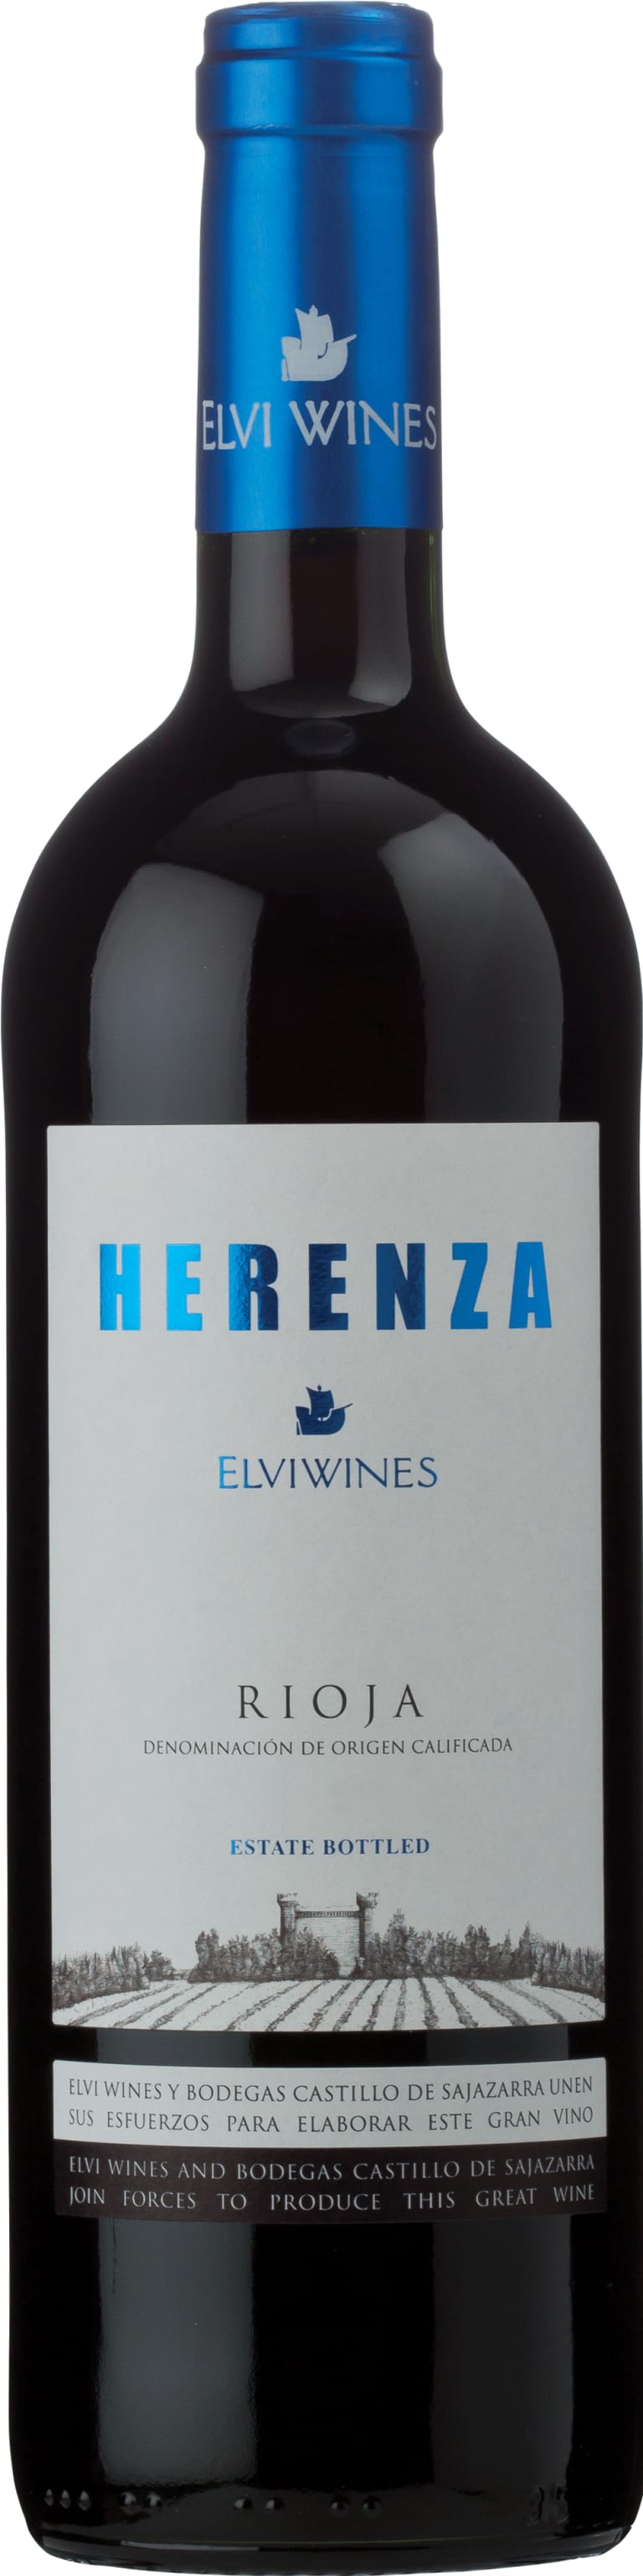 Elvi Wines Rioja Herenza 2019